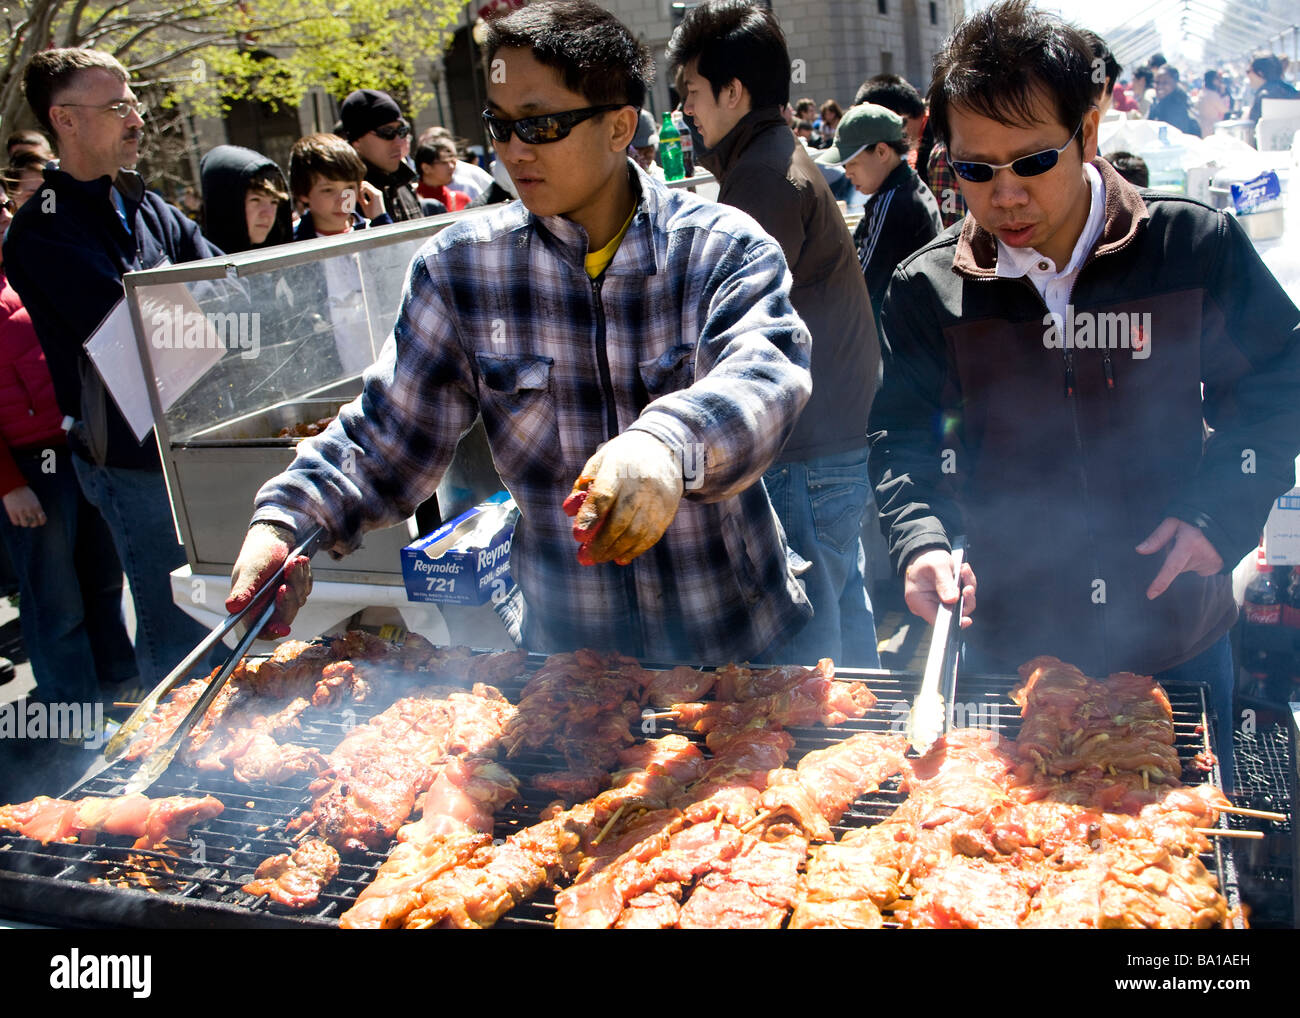 Asiatische Köche tendenziell Grill bei einem Outdoor-Festival - USA Stockfoto